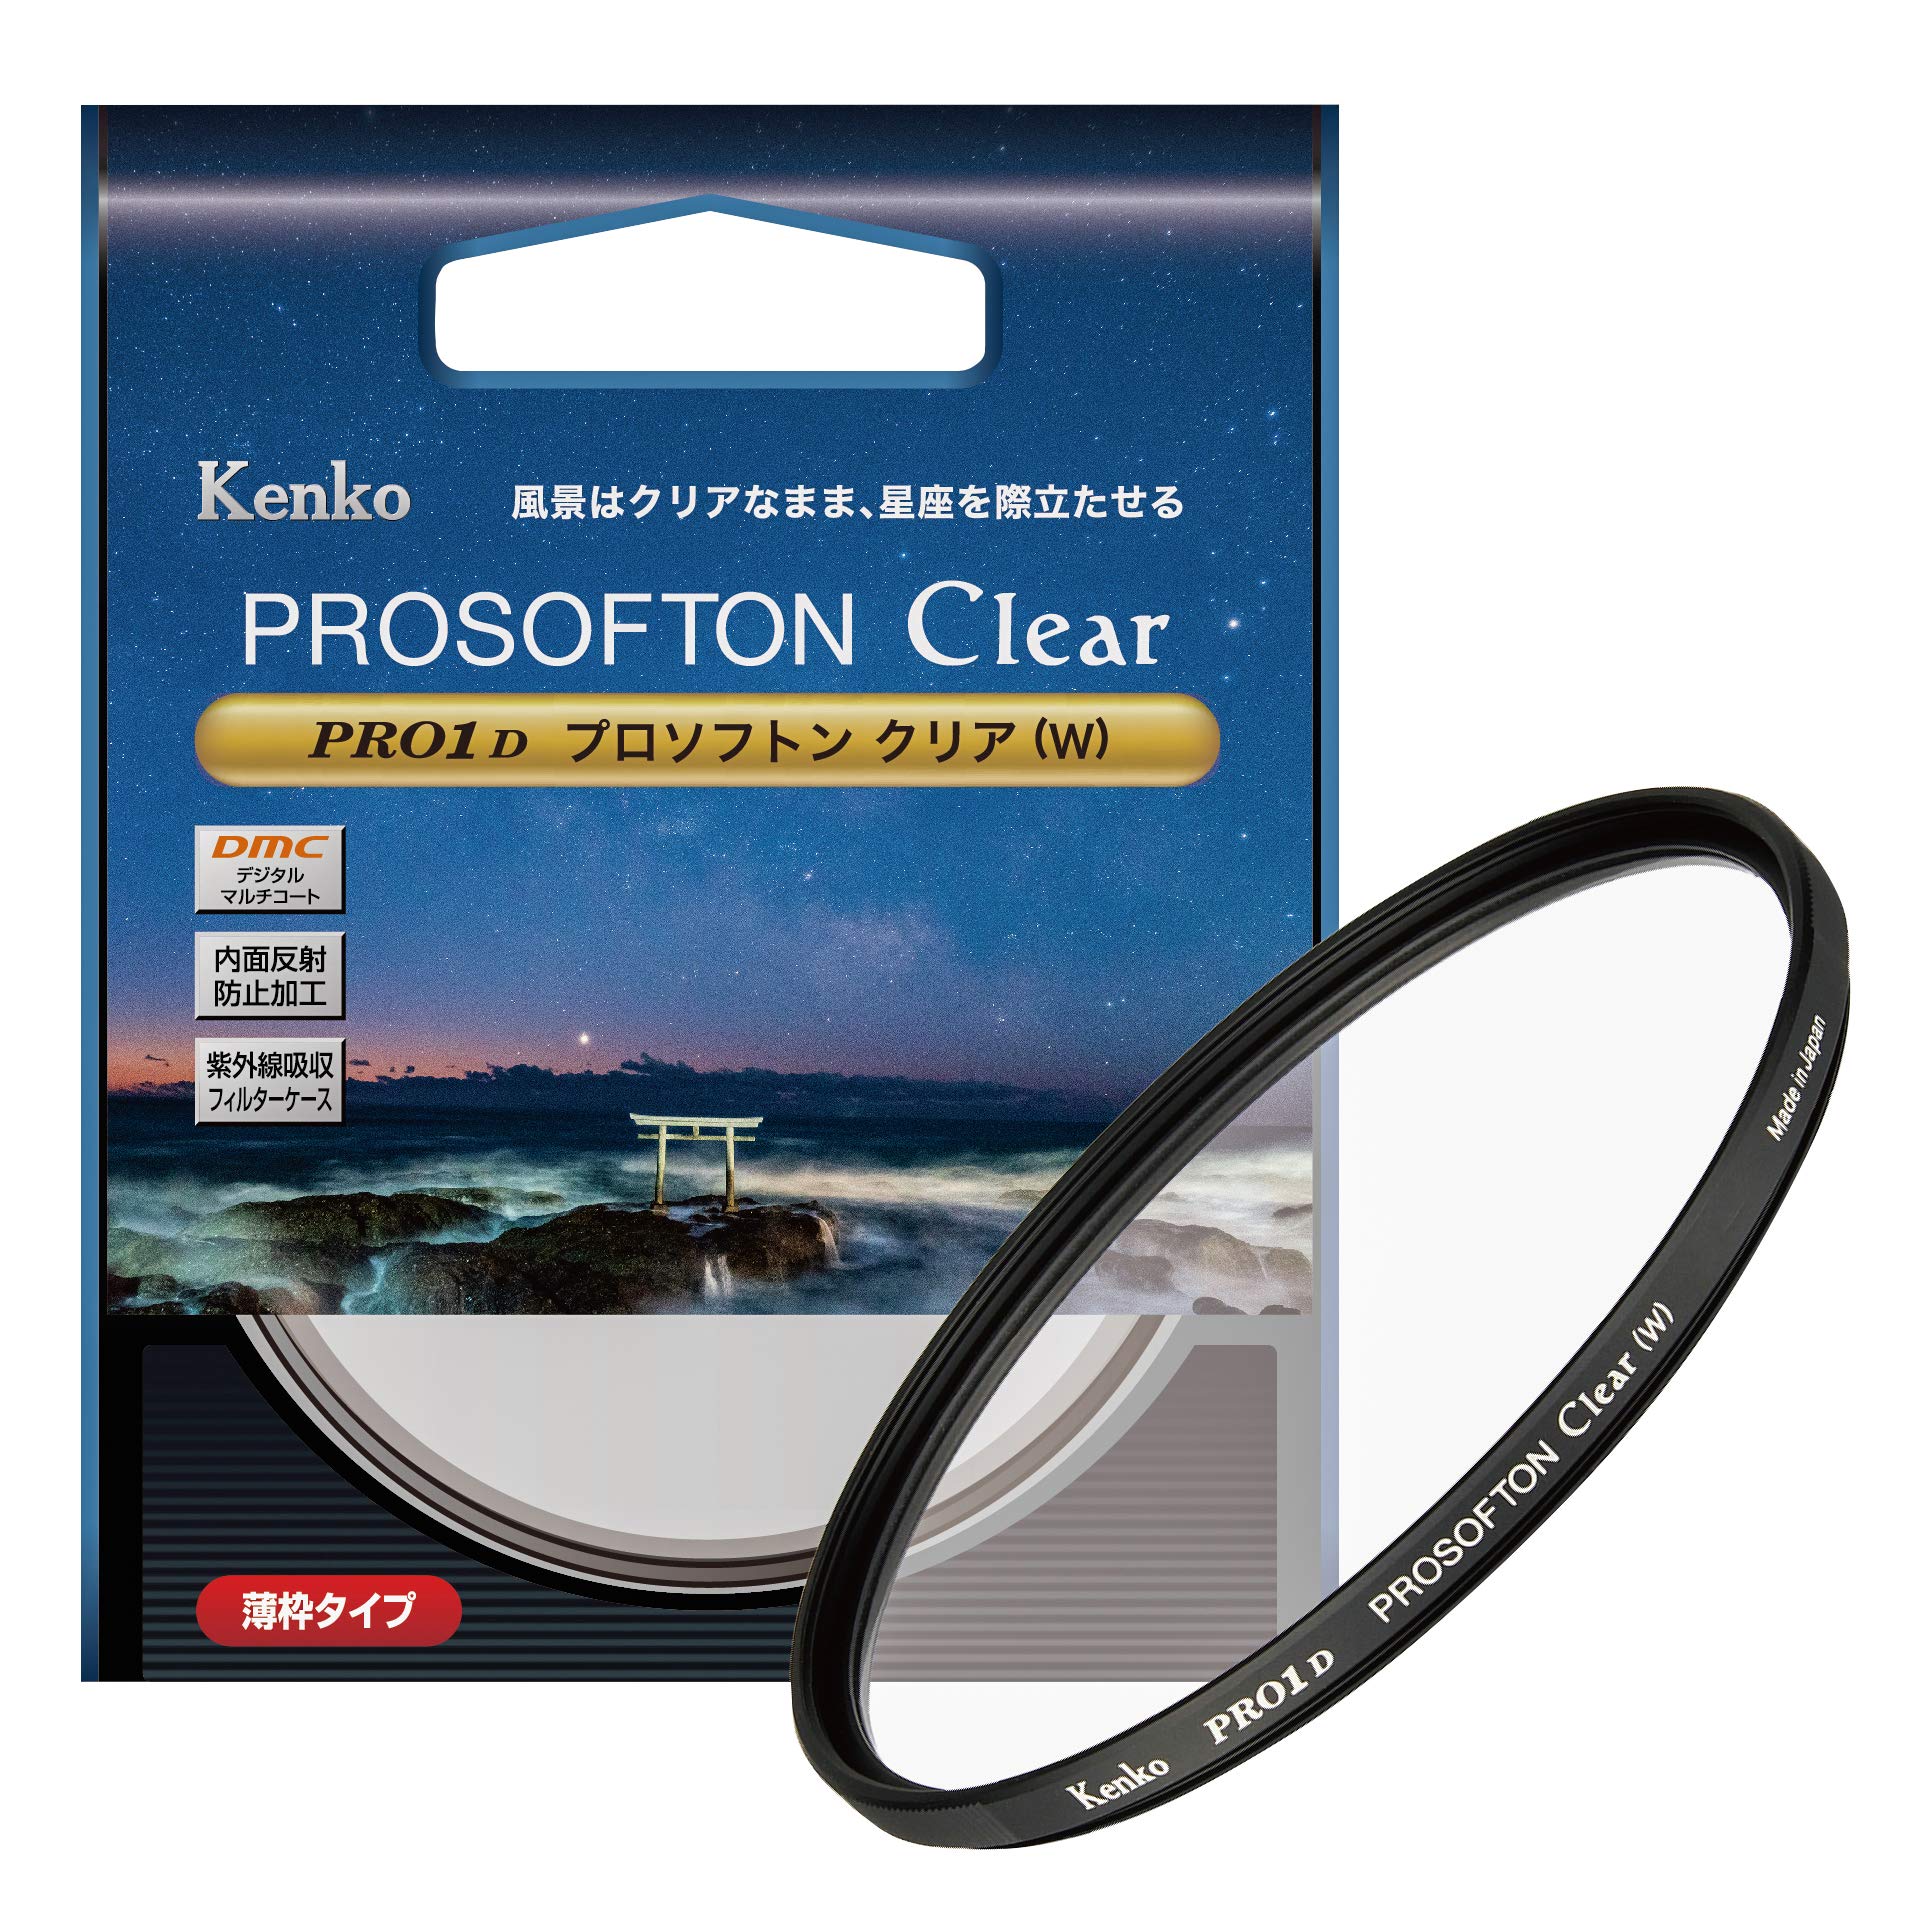 Kenko レンズフィルター PRO1D プロソフトン クリア (W) 62mm ソフト効果用 001905